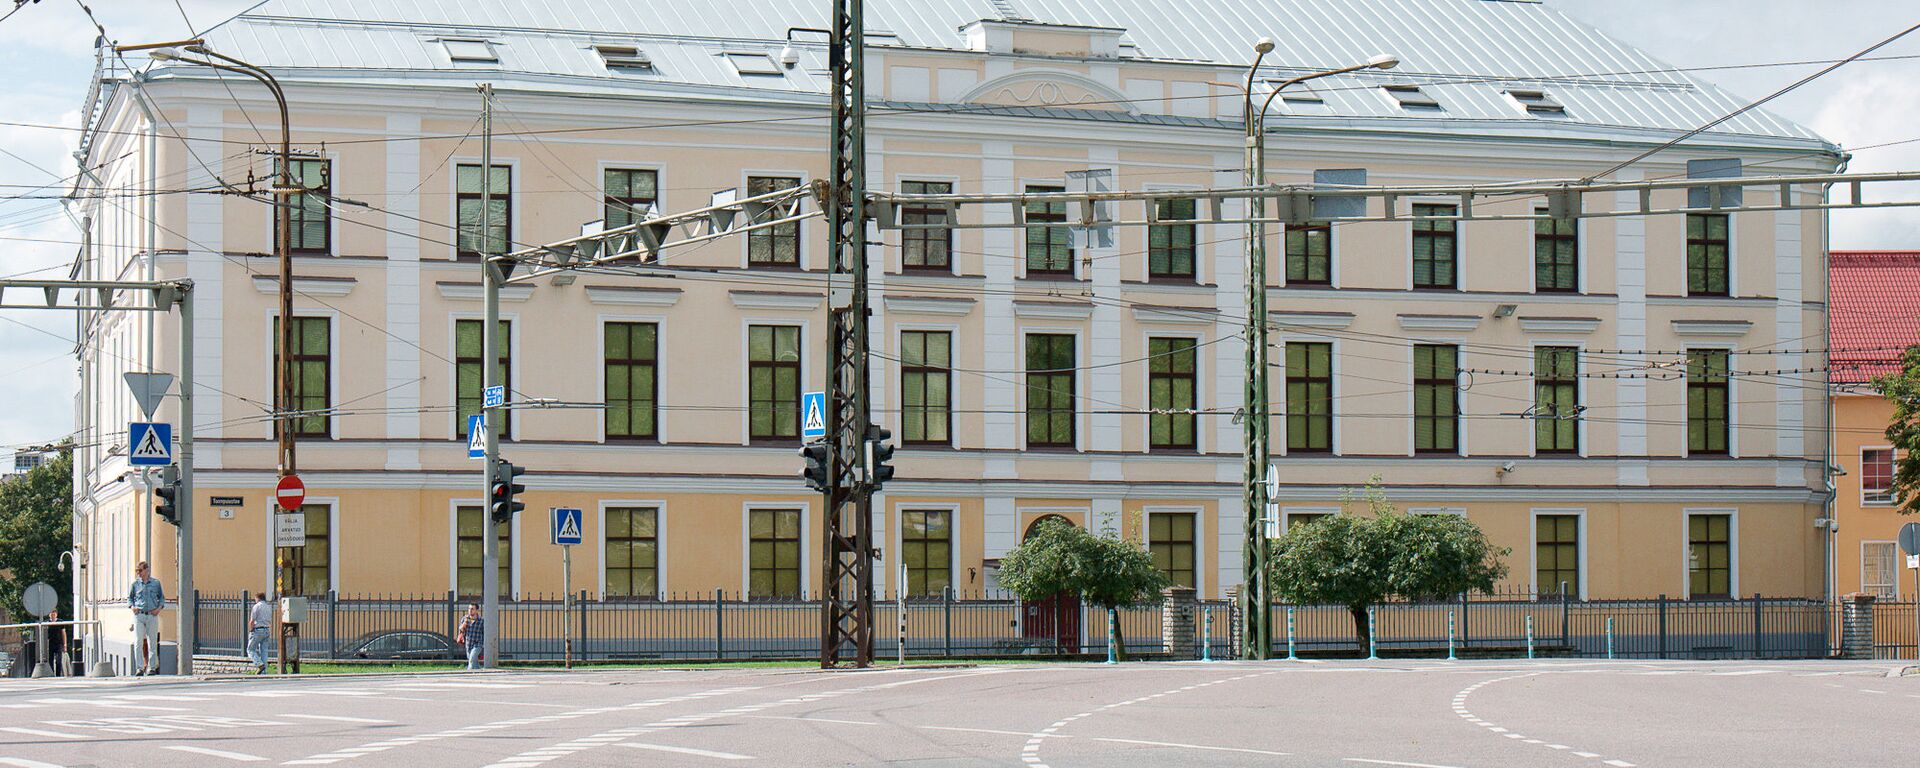 Здание эстонской Полиции безопасности в Таллинне.  - Sputnik Латвия, 1920, 11.08.2021